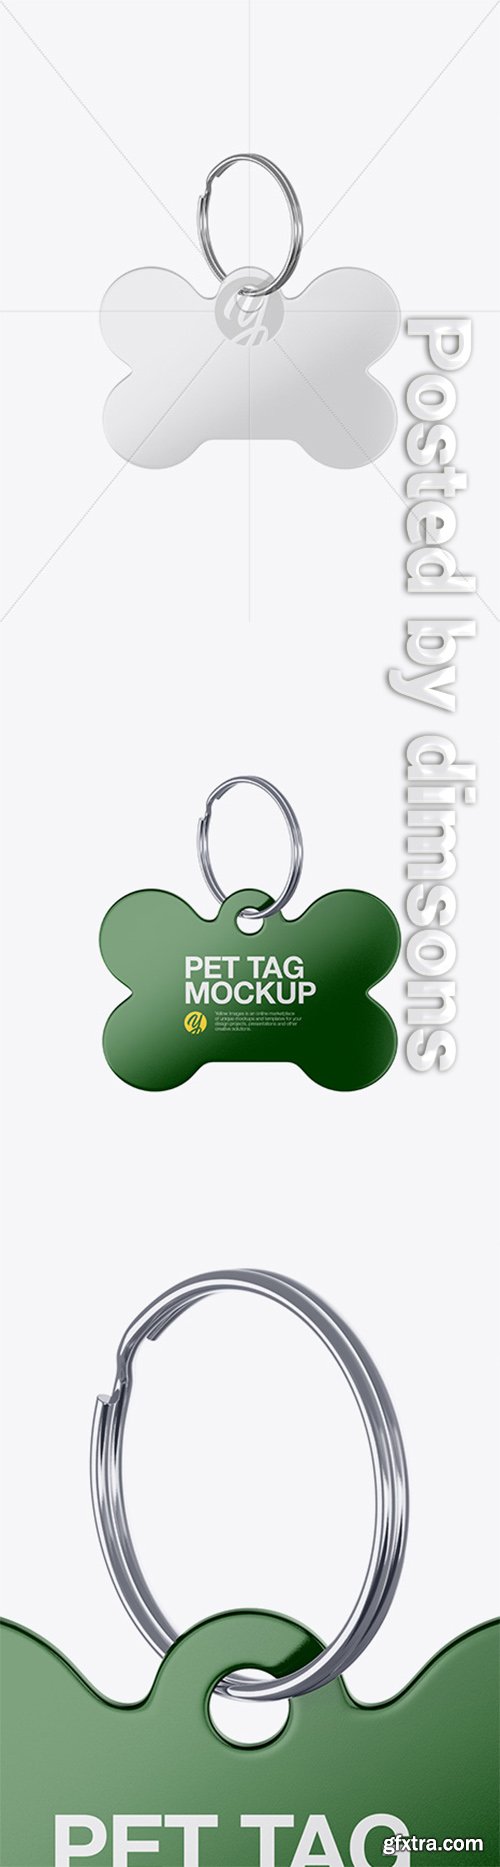 Glossy Pet Tag Mockup - Front View 30365